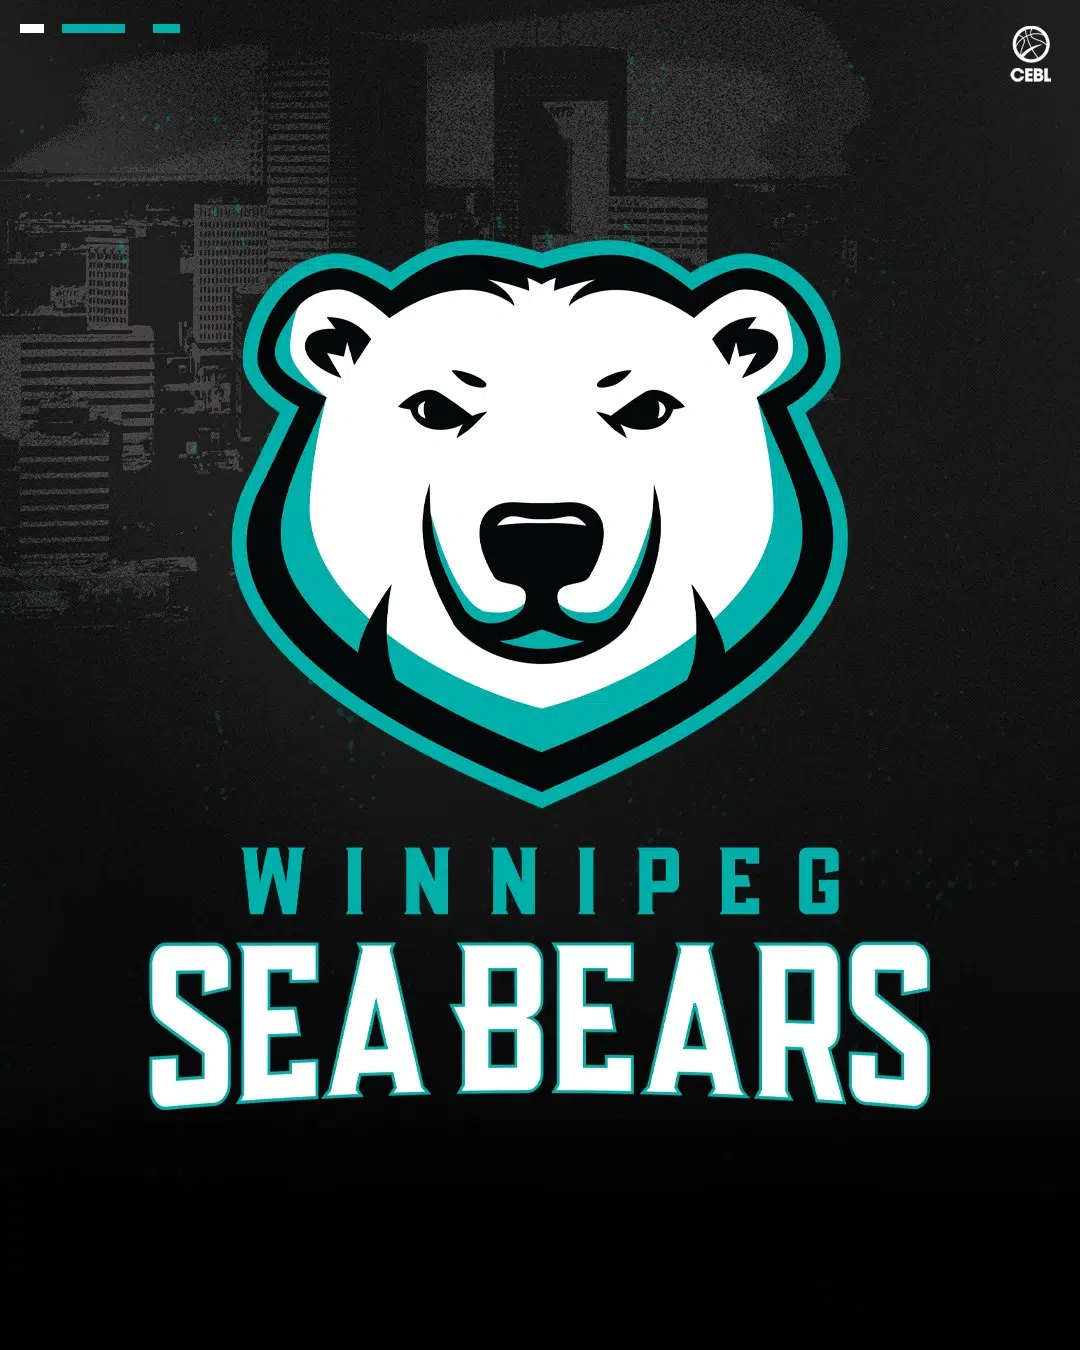 Winnipeg CEBL Team Officially Announced